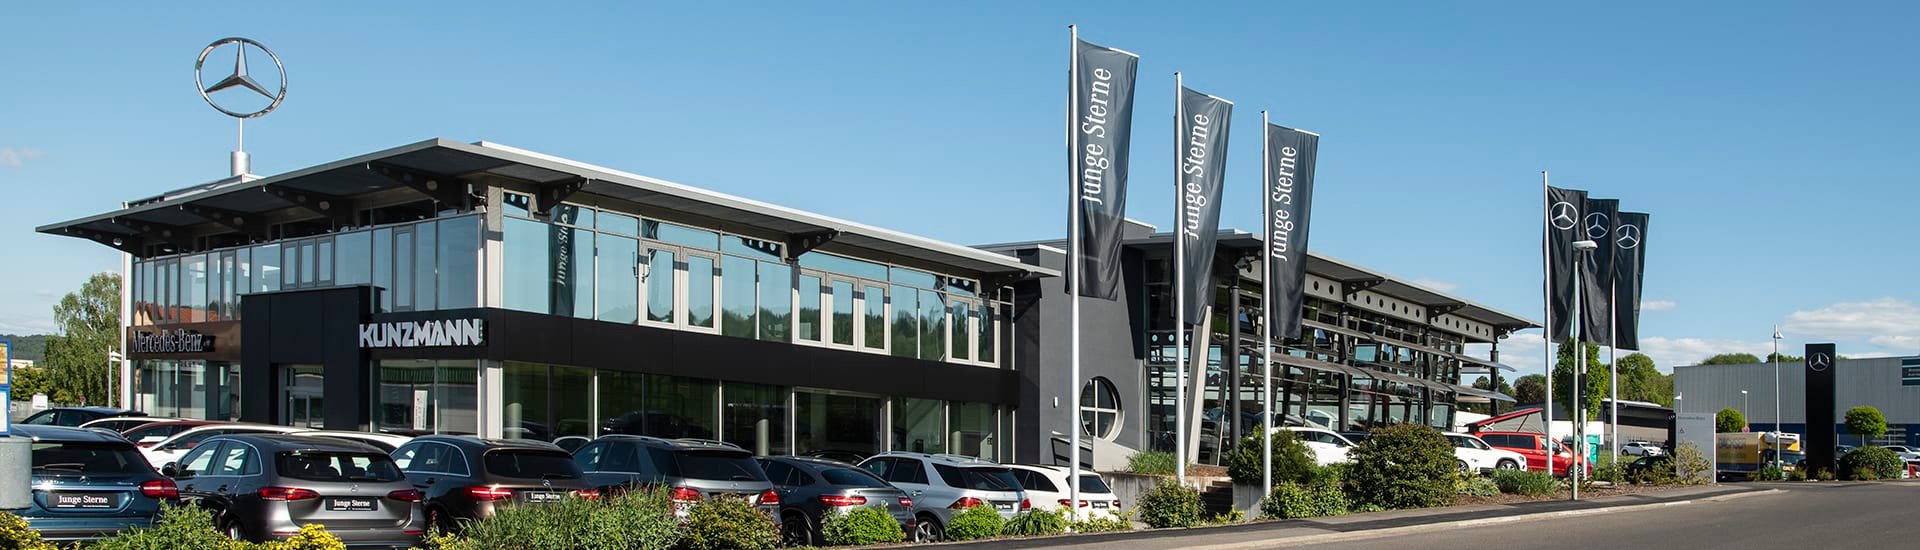 Autohaus Kunzmann Gelnhausen | Verkauf und Werkstatt für Mercedes Pkw, Transporter und Lkw